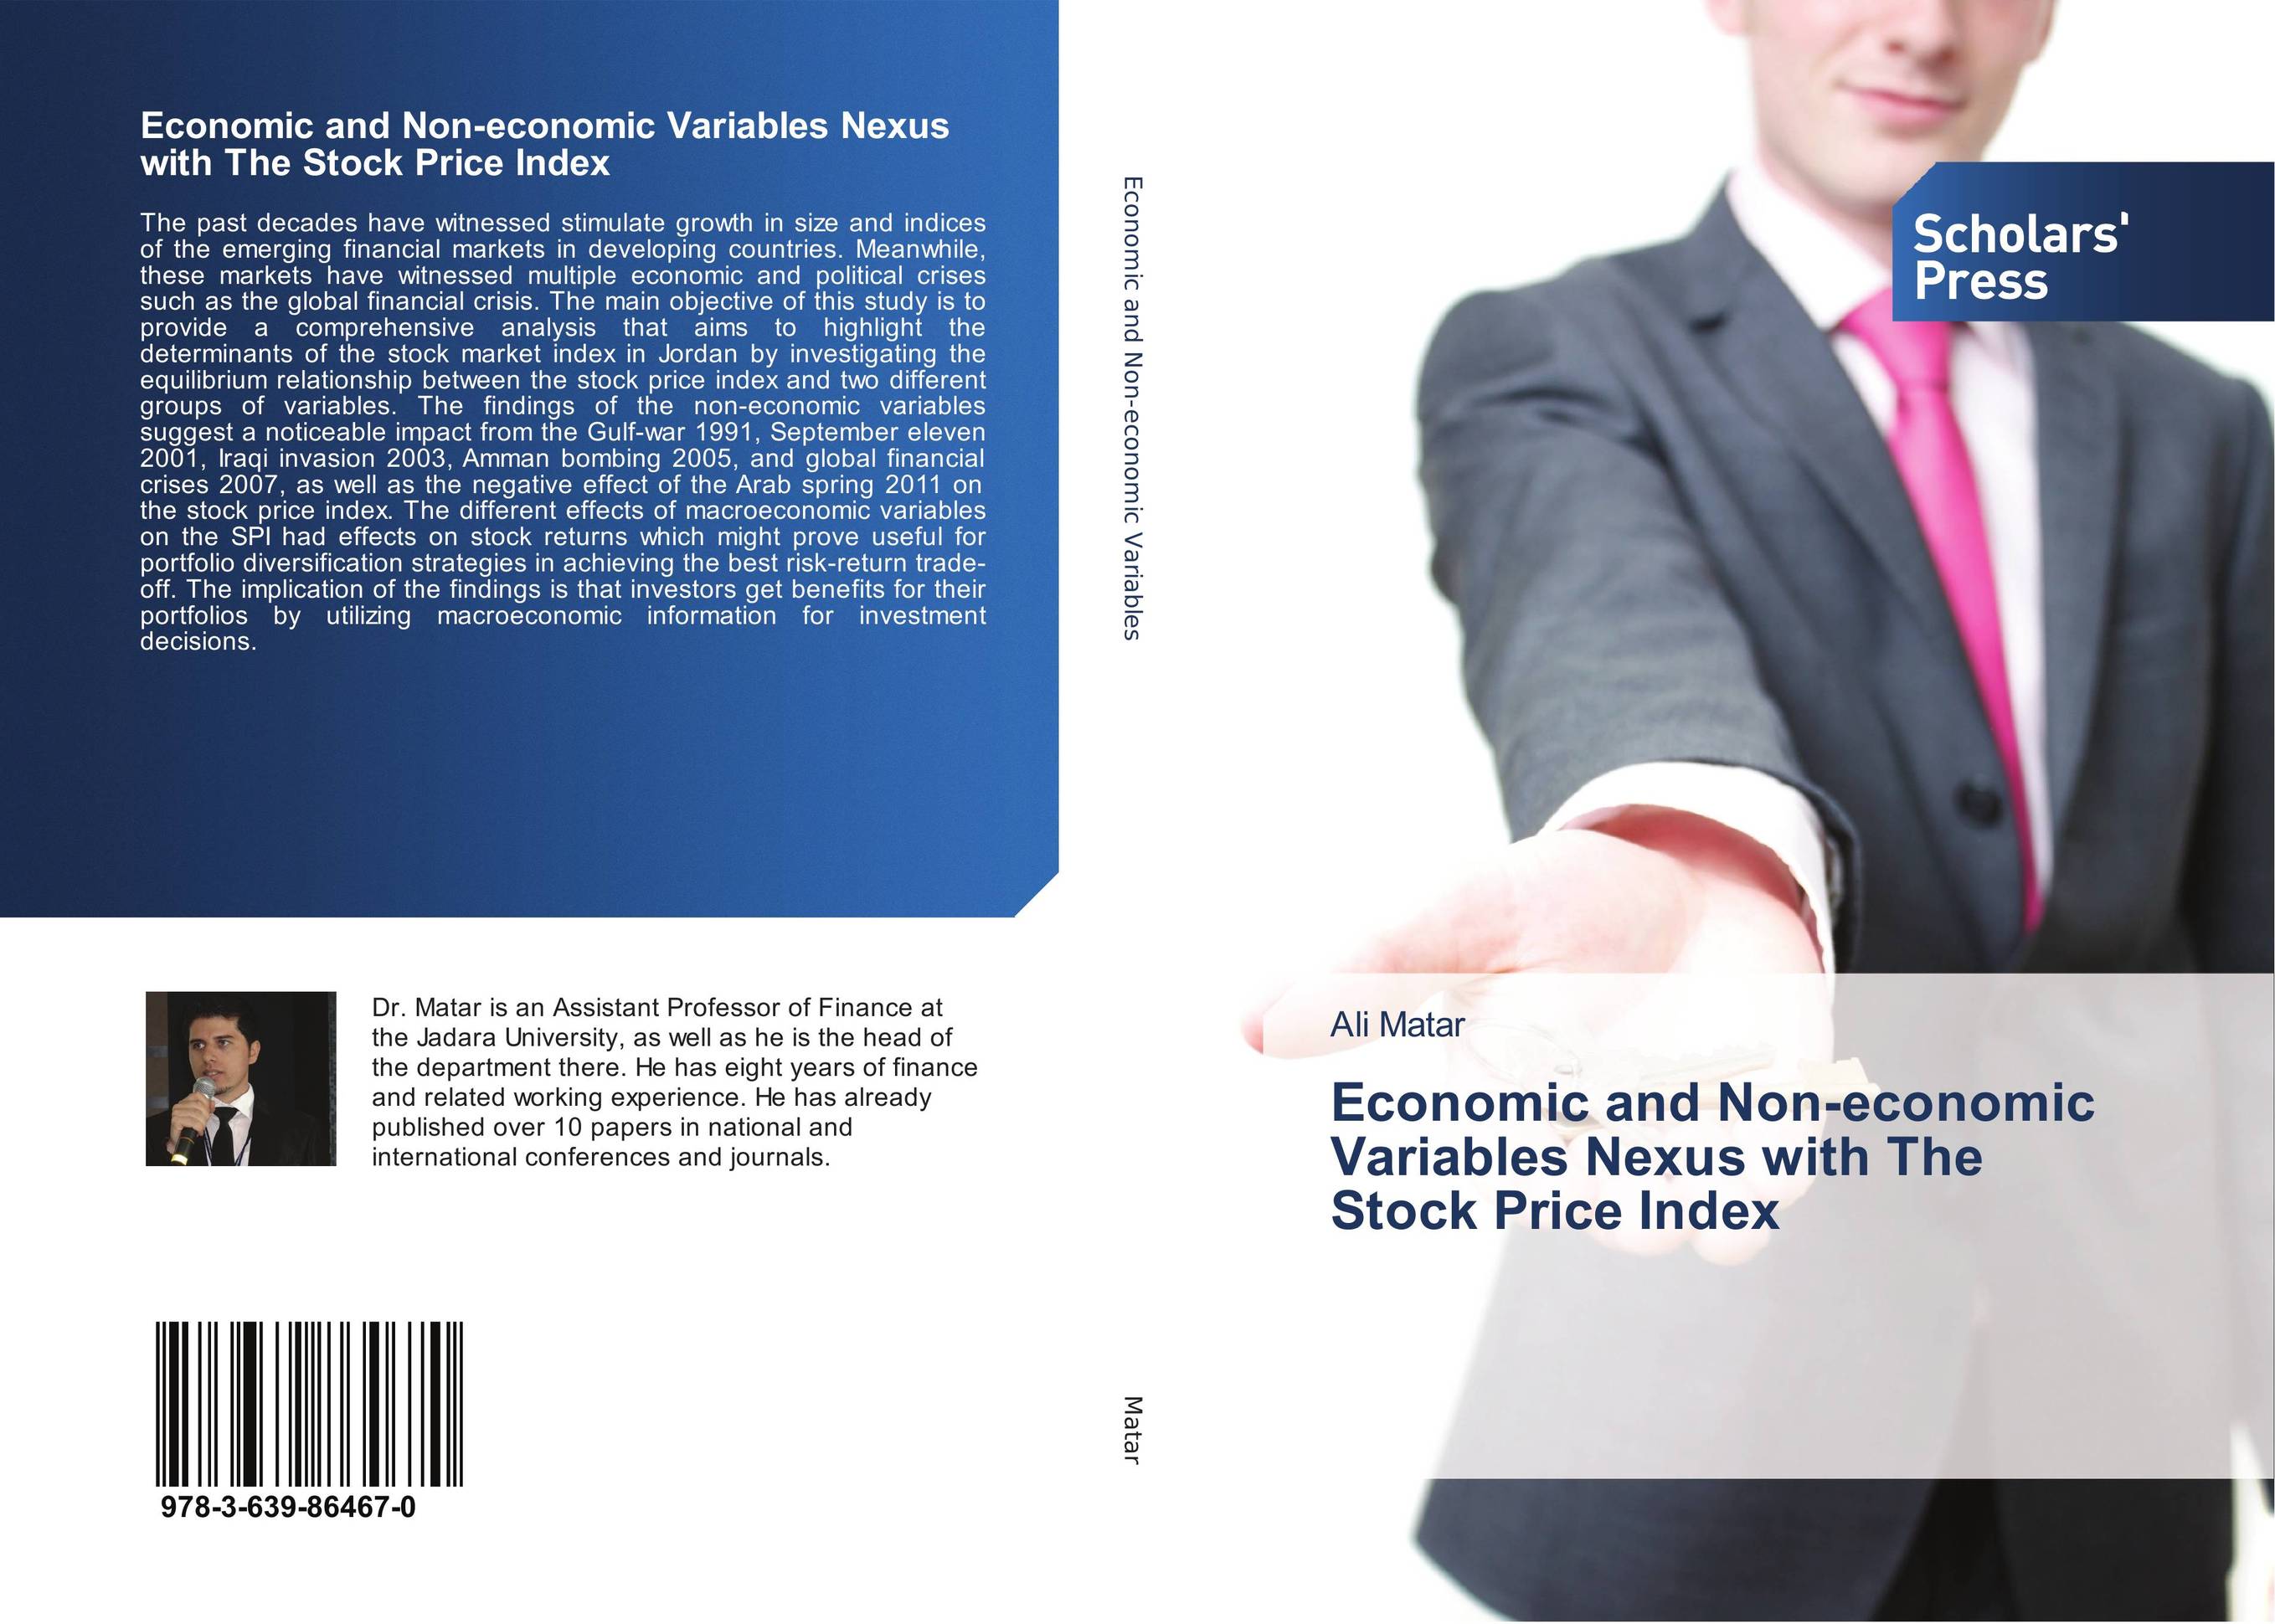 Economic and Non-economic Variables Nexus with The Stock Price Index